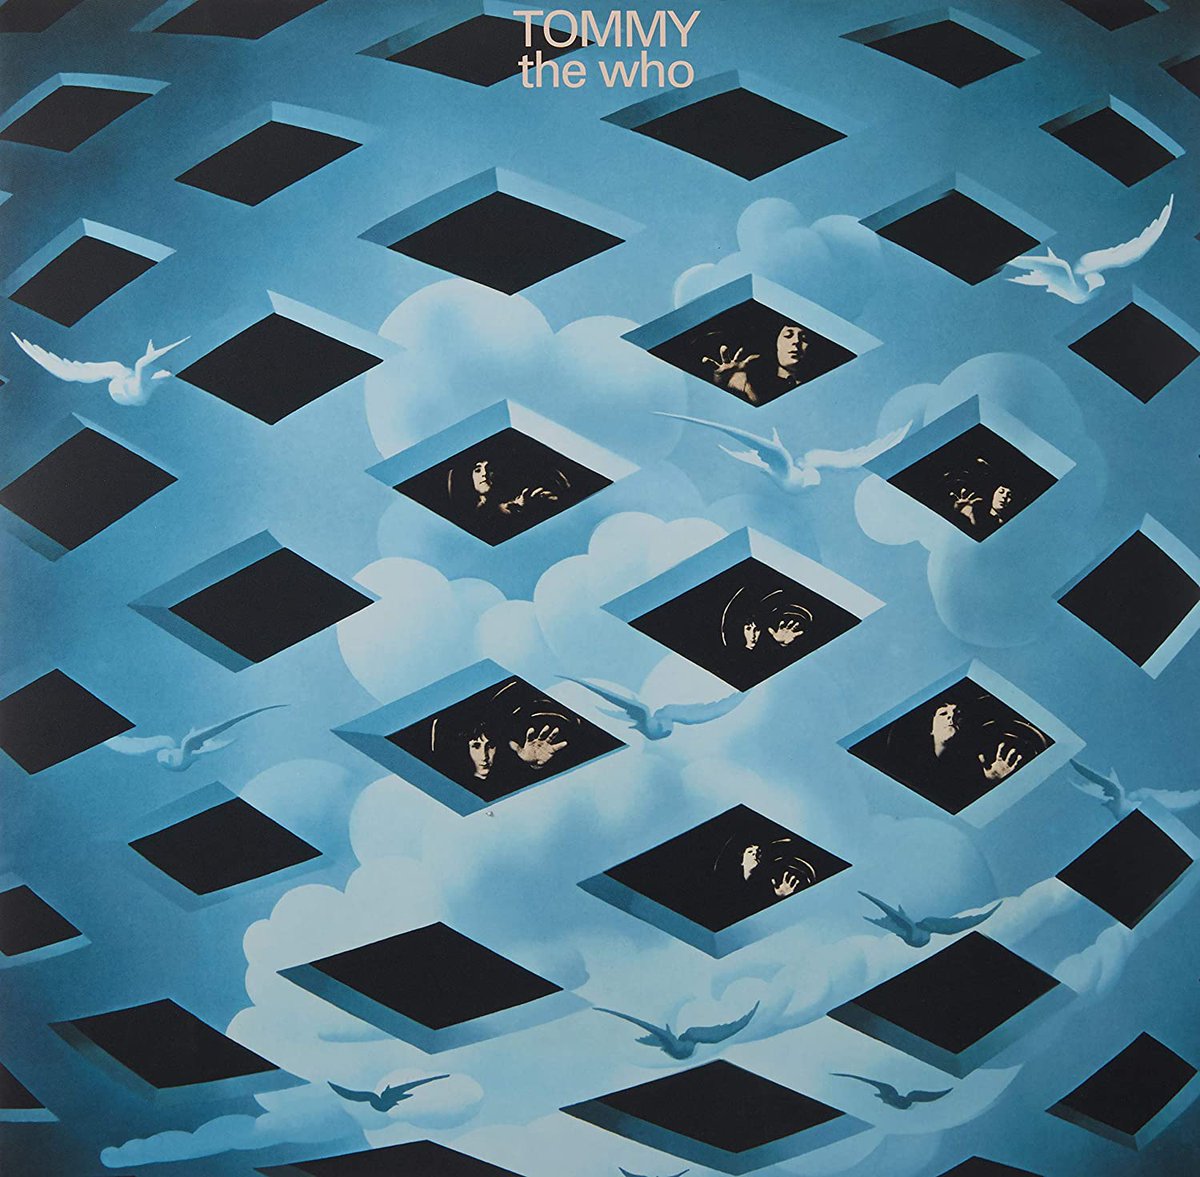 Il #2maggio del 1969 gli #WHO suonarono un'anteprima per i media della loro opera rock 'TOMMY' al Ronnie Scott's di Londra.   

#TheWho #TOMMY #rockopera #almanaccomercury